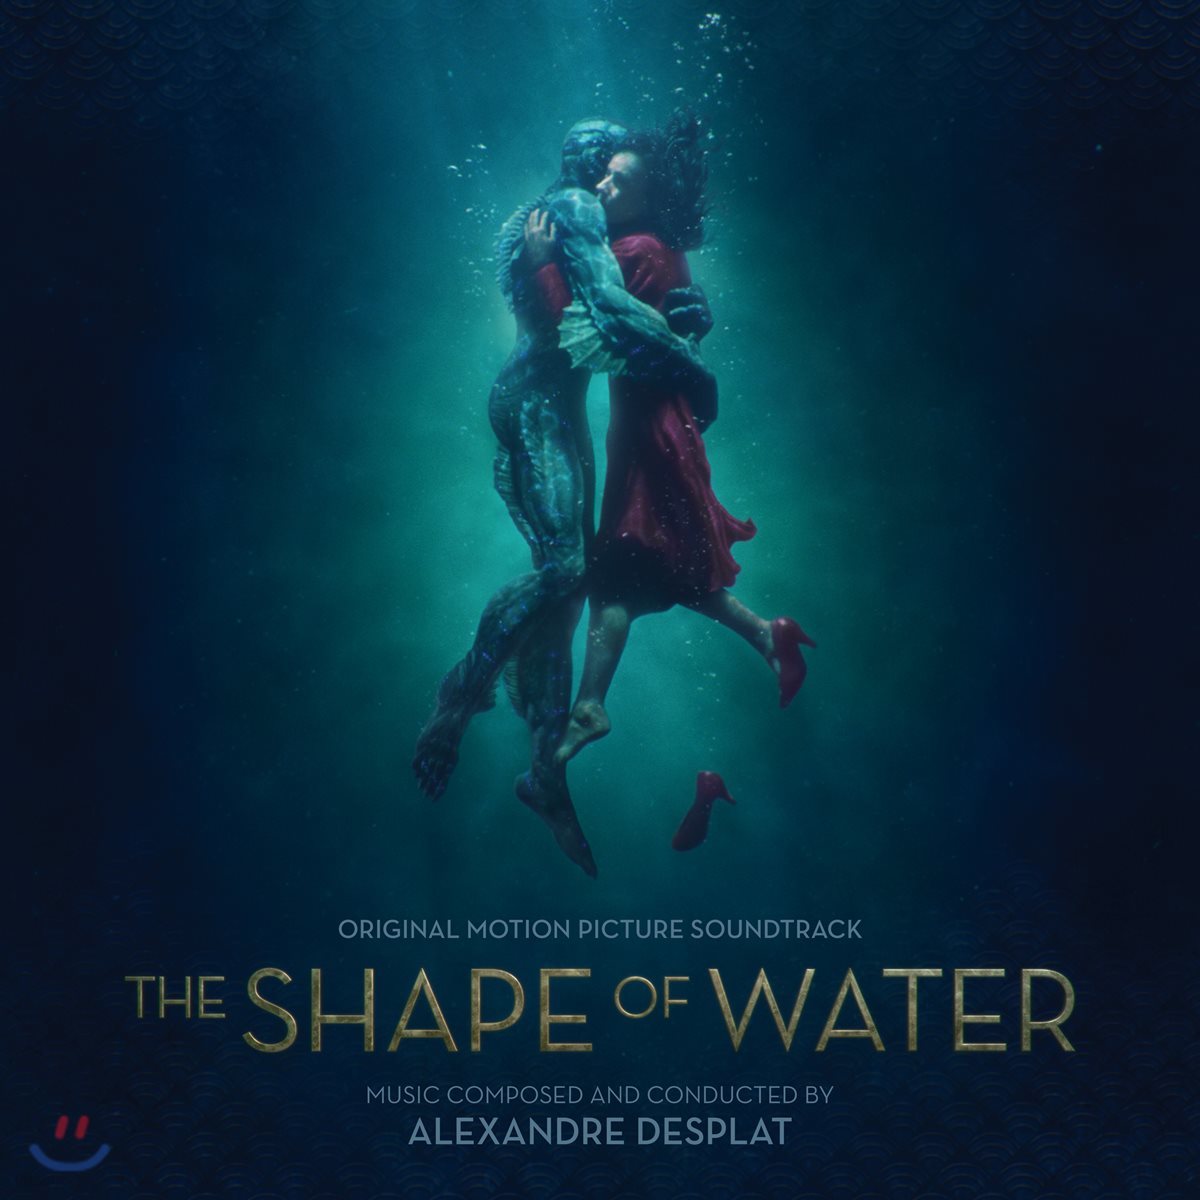 셰이프 오브 워터: 사랑의 모양 영화음악 (The Shape of Water OST by Alexandre Desplat 알렉상드르 데스플라)